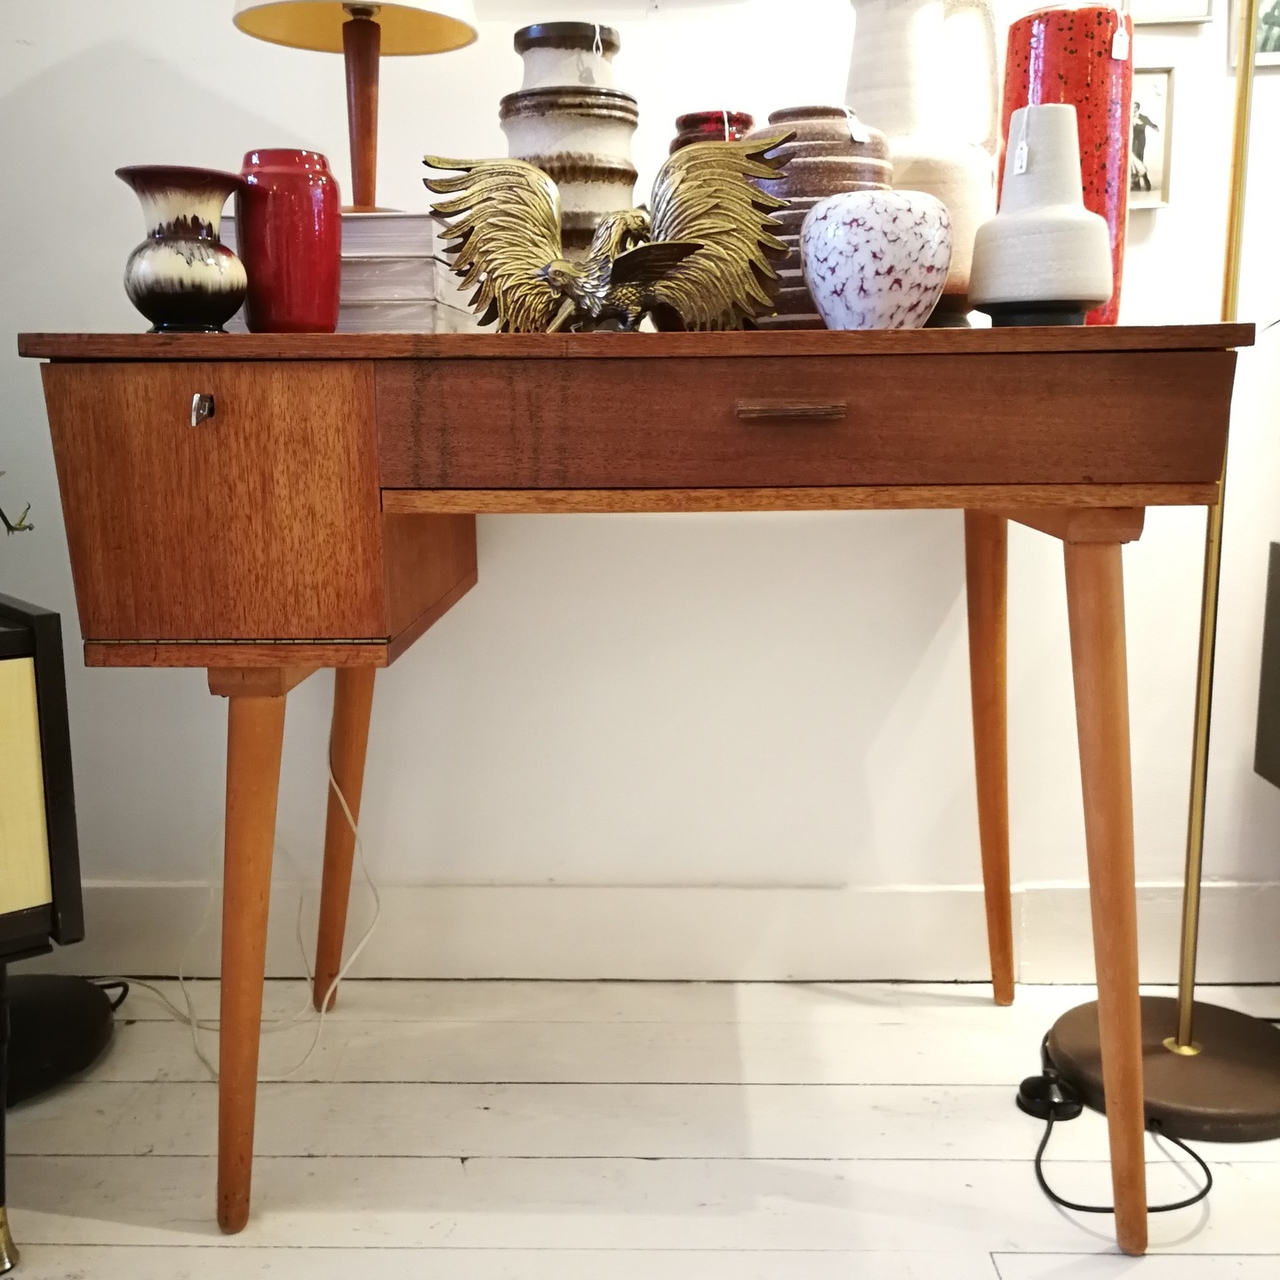 Middel banaan Klimatologische bergen Vintage teak houten bureau | Sprinkel + Hop